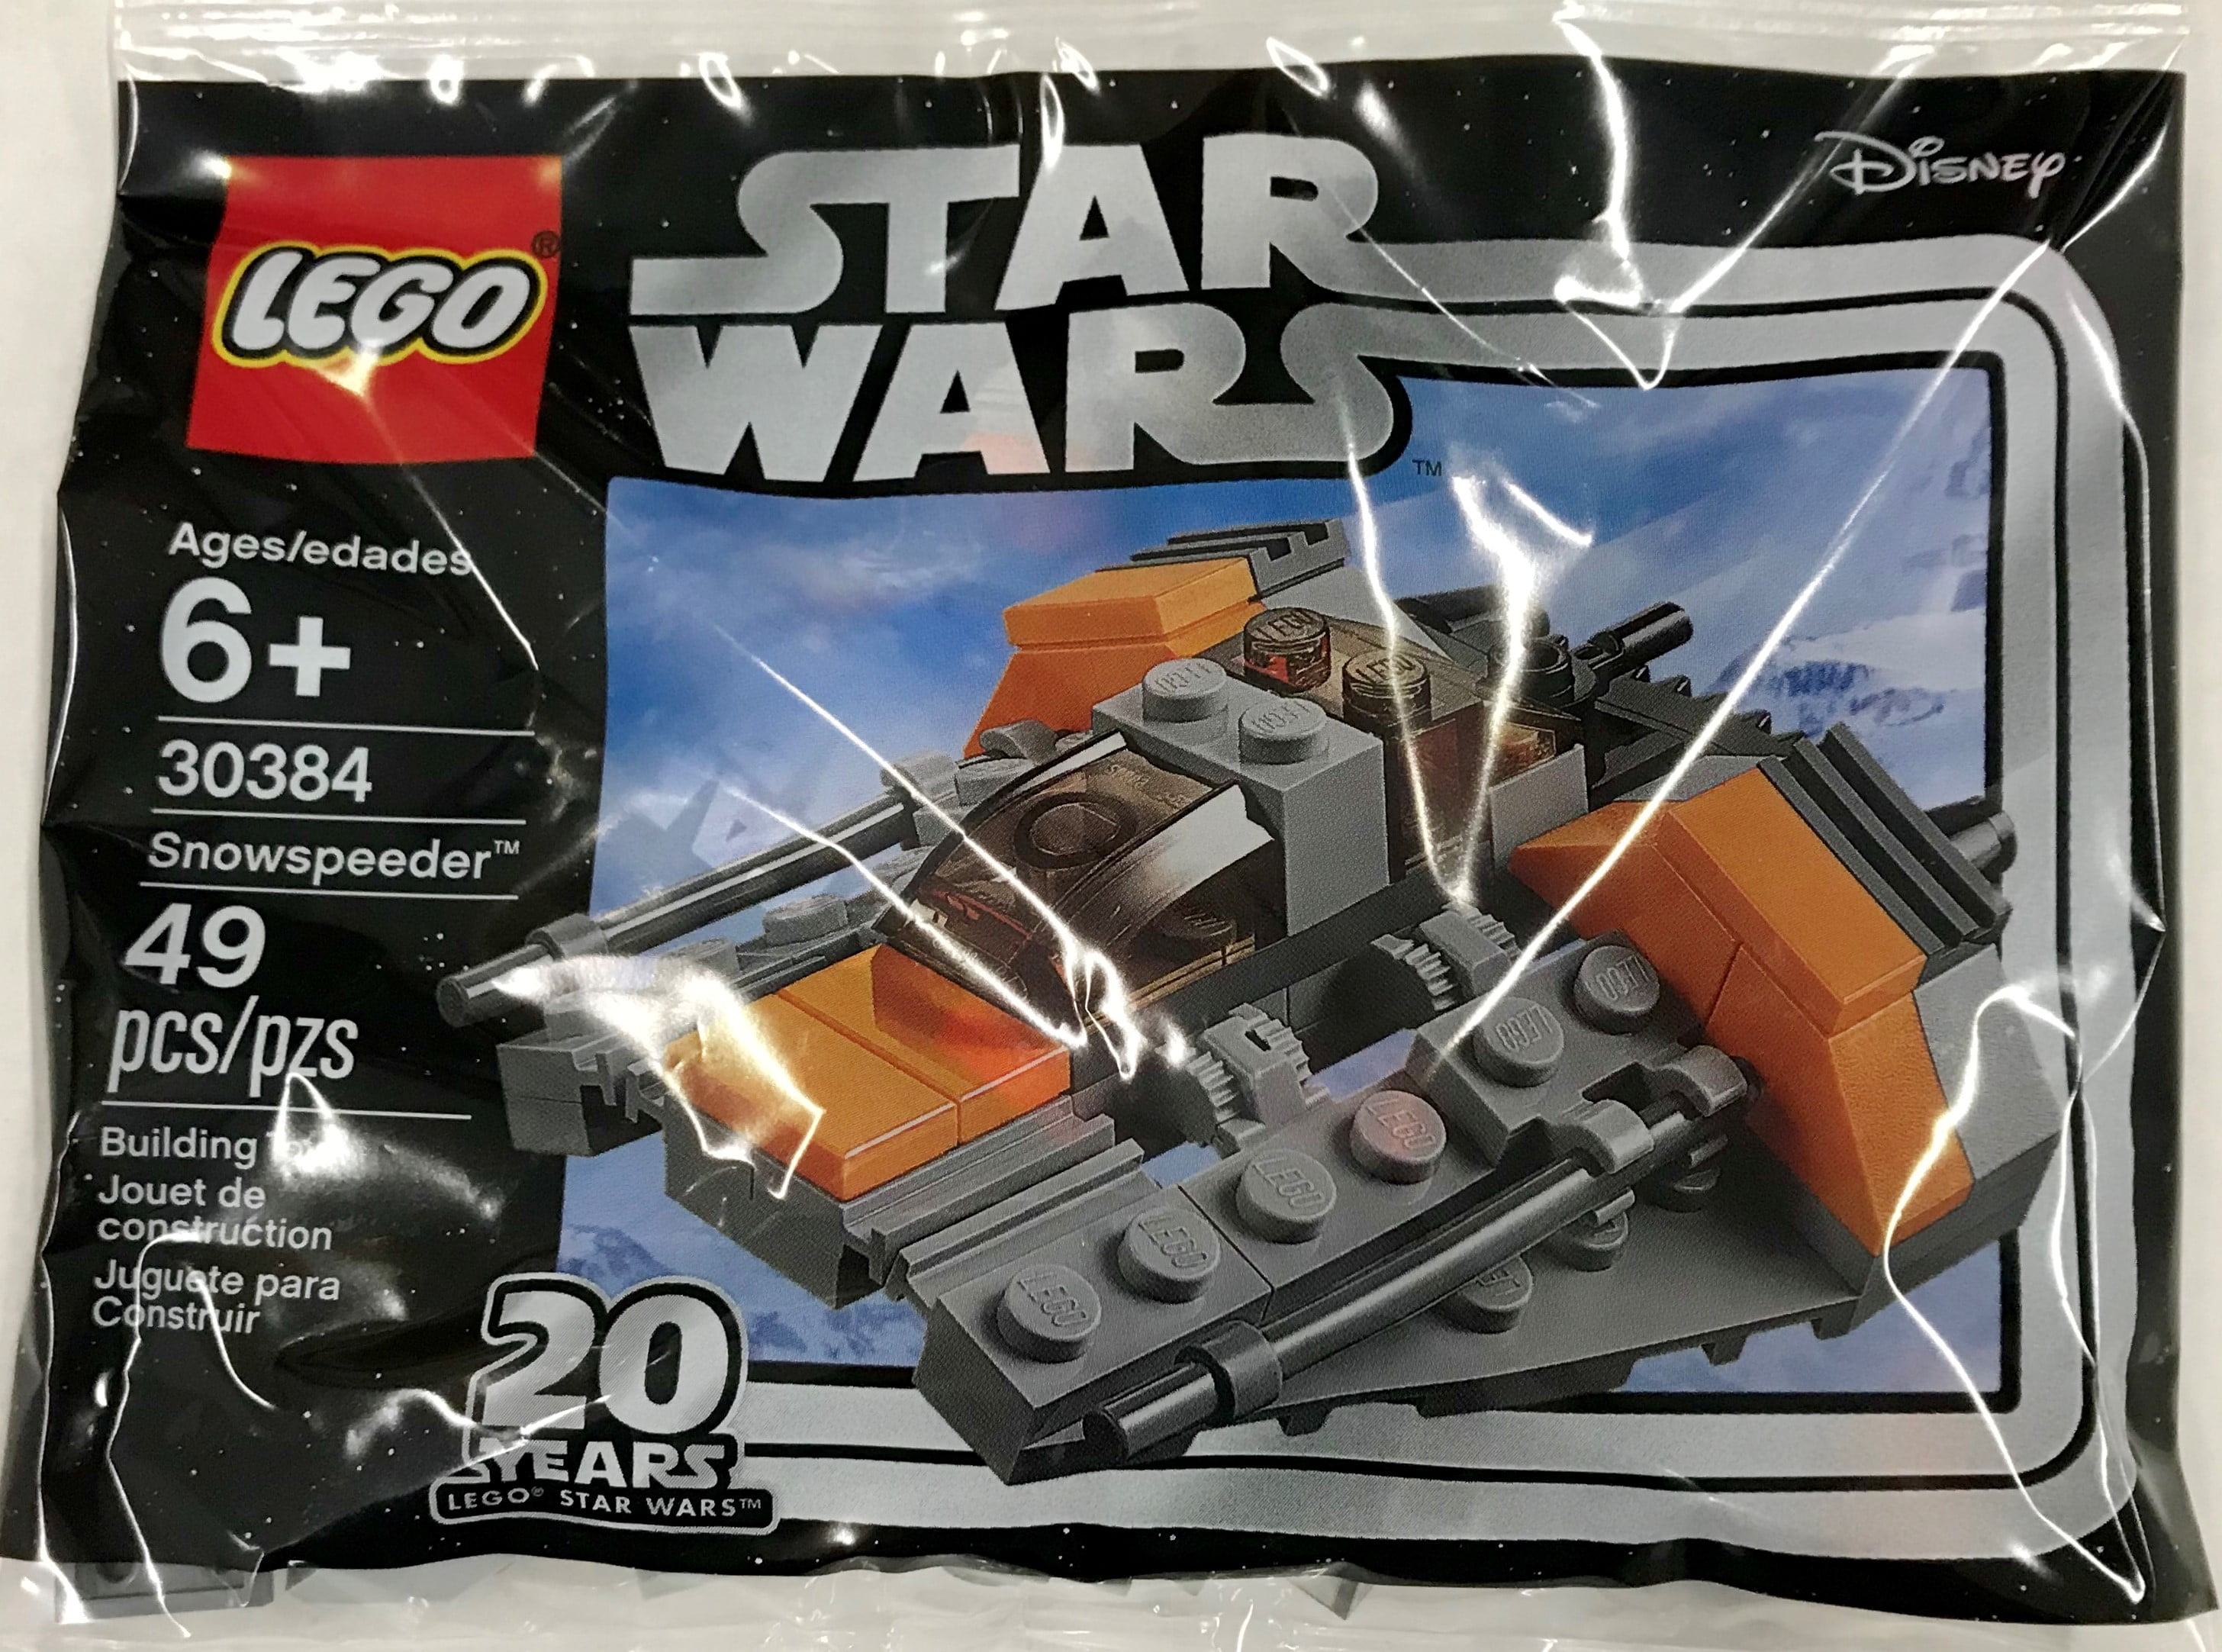 STAR Wars shaak TI ADI Gungan Jar Oola piell Luminara Personalizzato Lego Mini Figura 